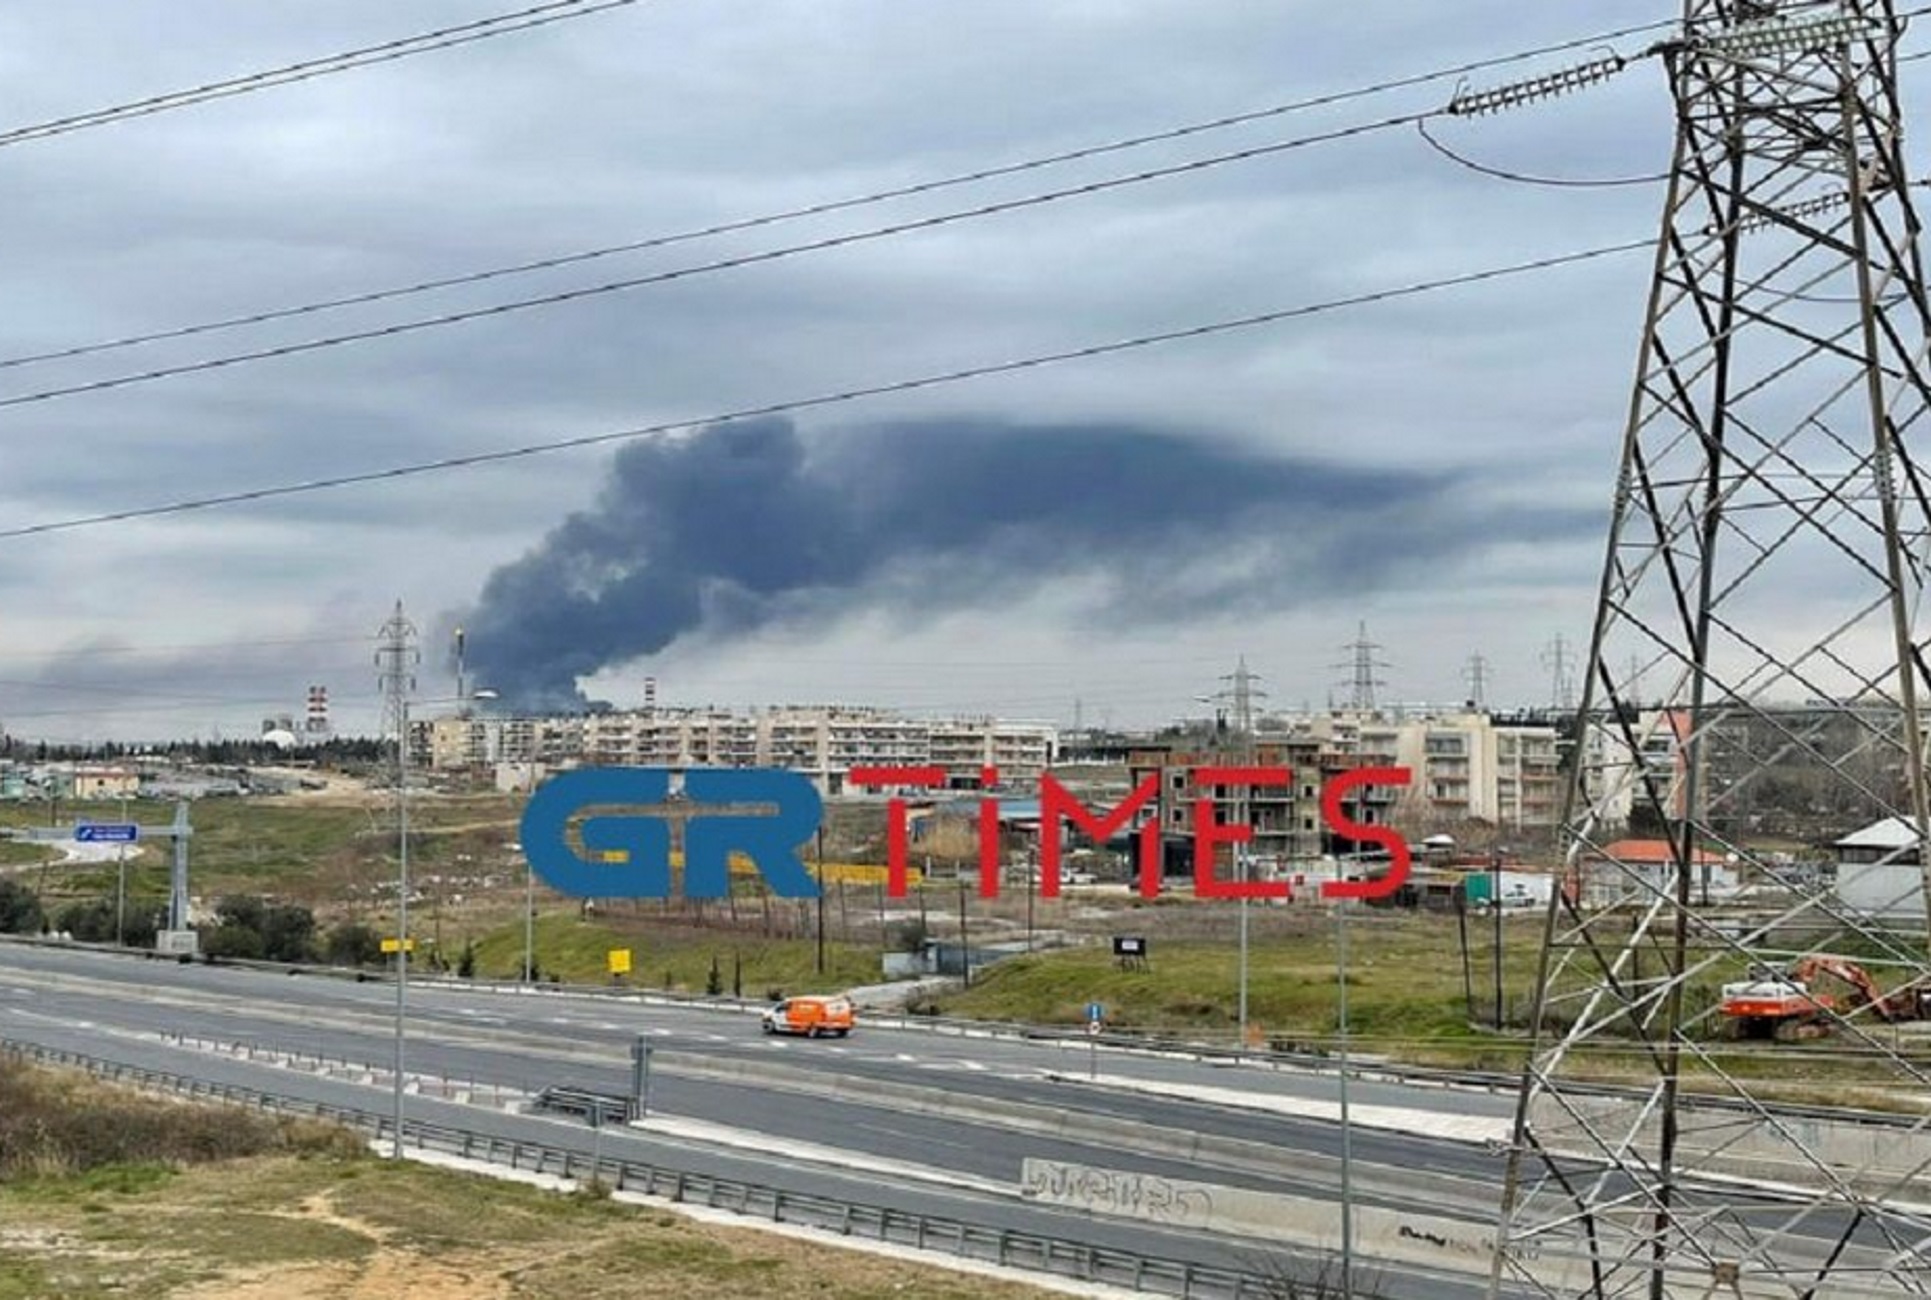 Θεσσαλονίκη: Η μεγάλη φωτιά σε εργοστάσιο και το μαύρο σύννεφο που απλώνεται στο Ωραιόκαστρο